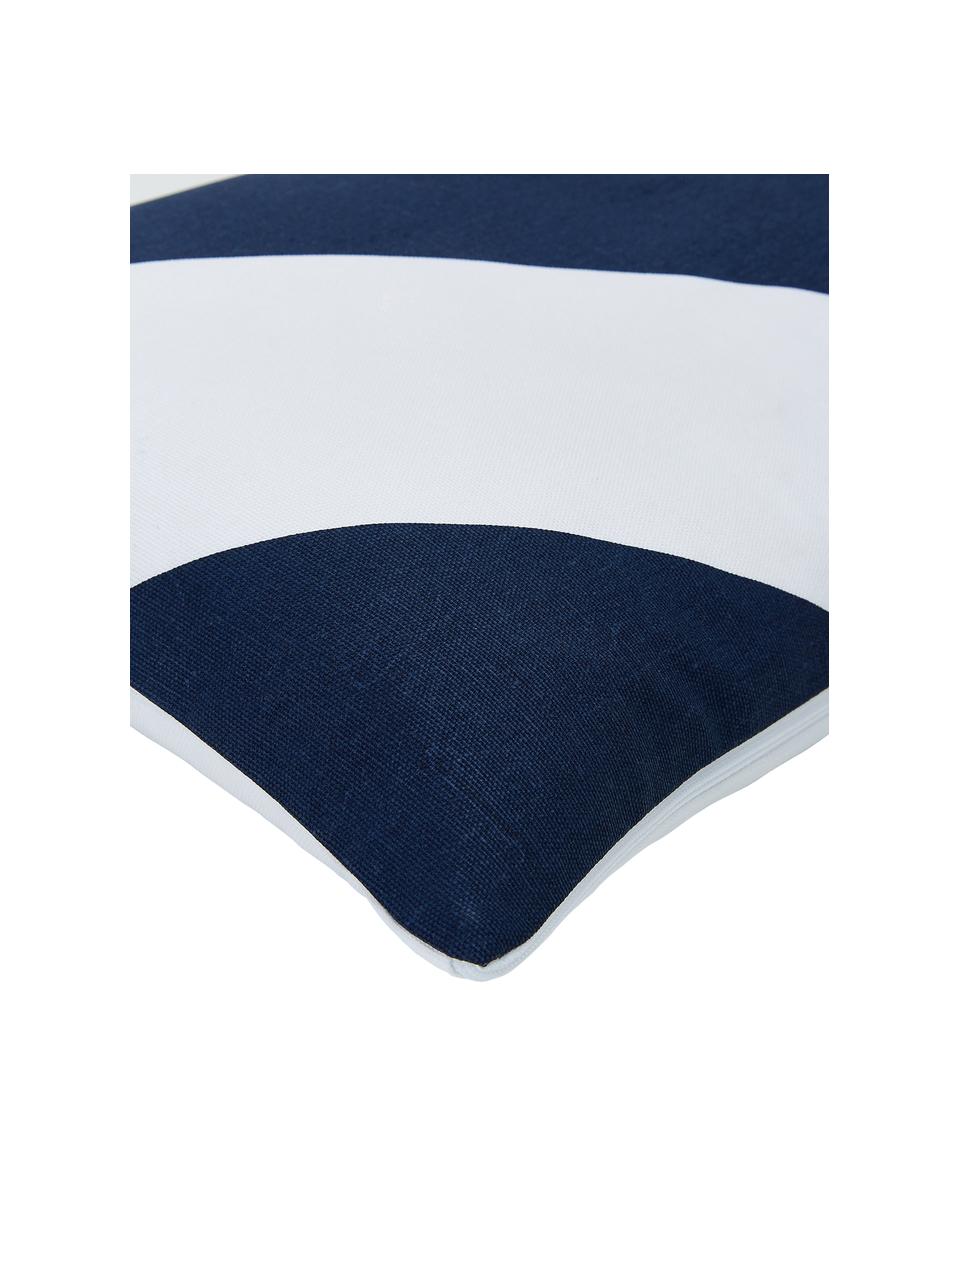 Funda de cojín estampada Ren, 100% algodón, Blanco, azul oscuro, An 30 x L 50 cm